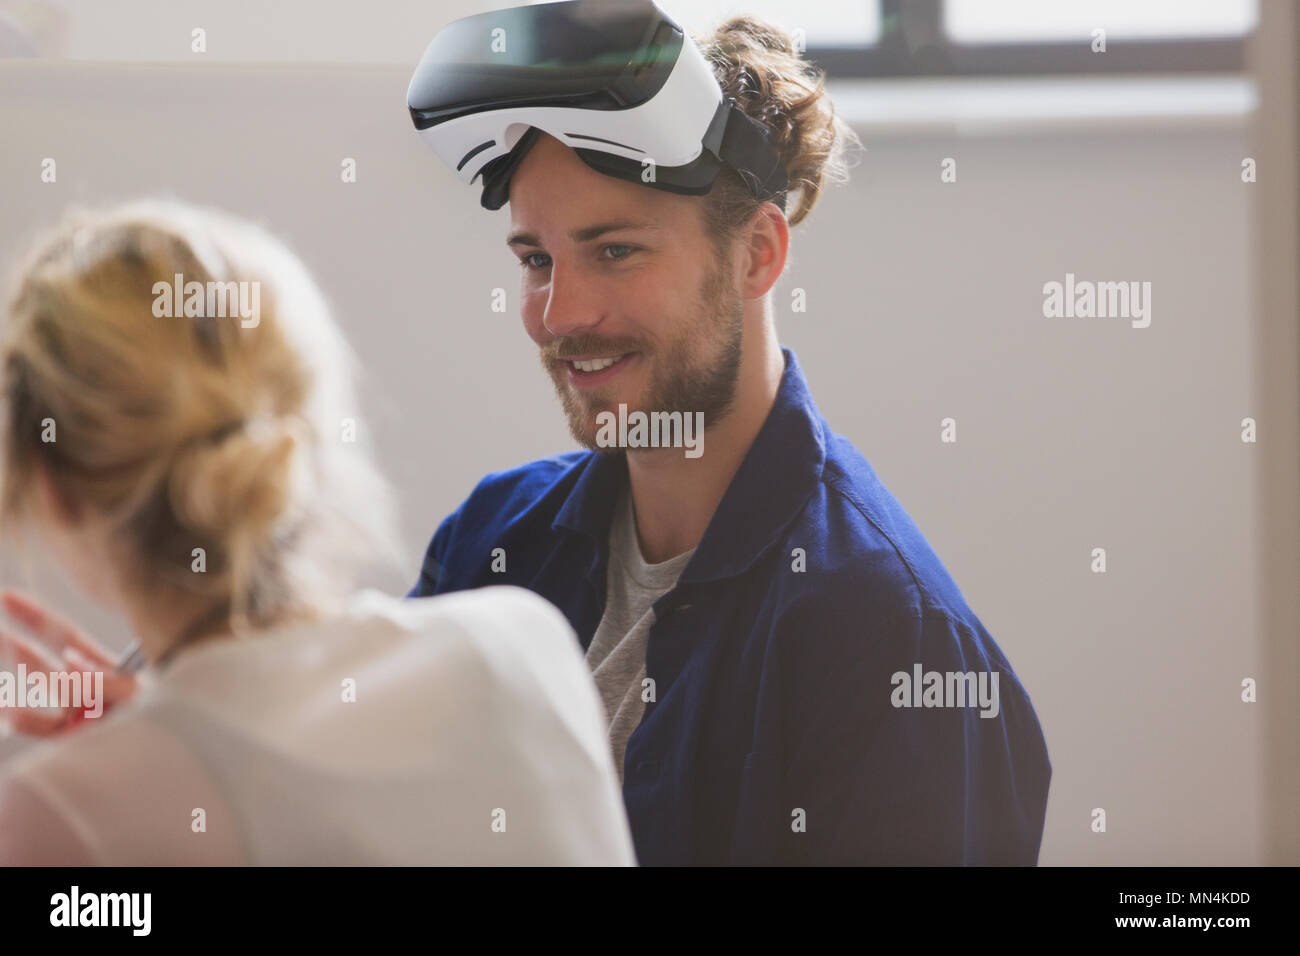 Smiling computer programmer le port de verres simulateur de réalité virtuelle Banque D'Images